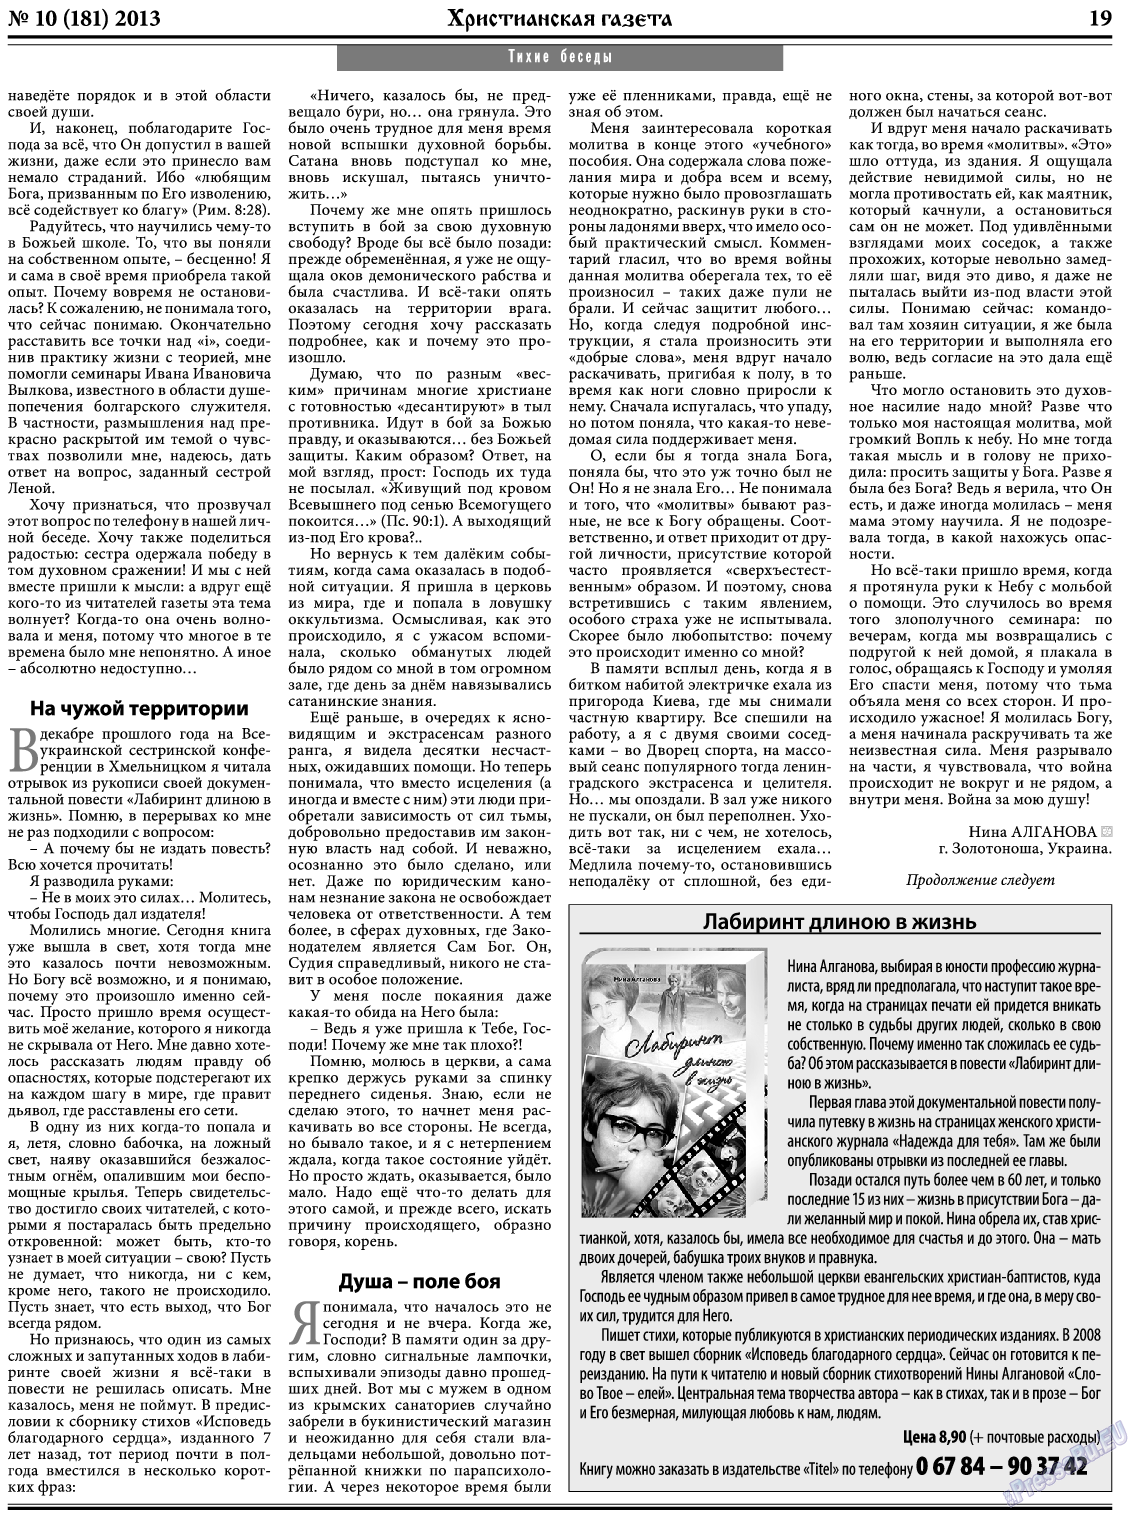 Христианская газета, газета. 2013 №10 стр.27